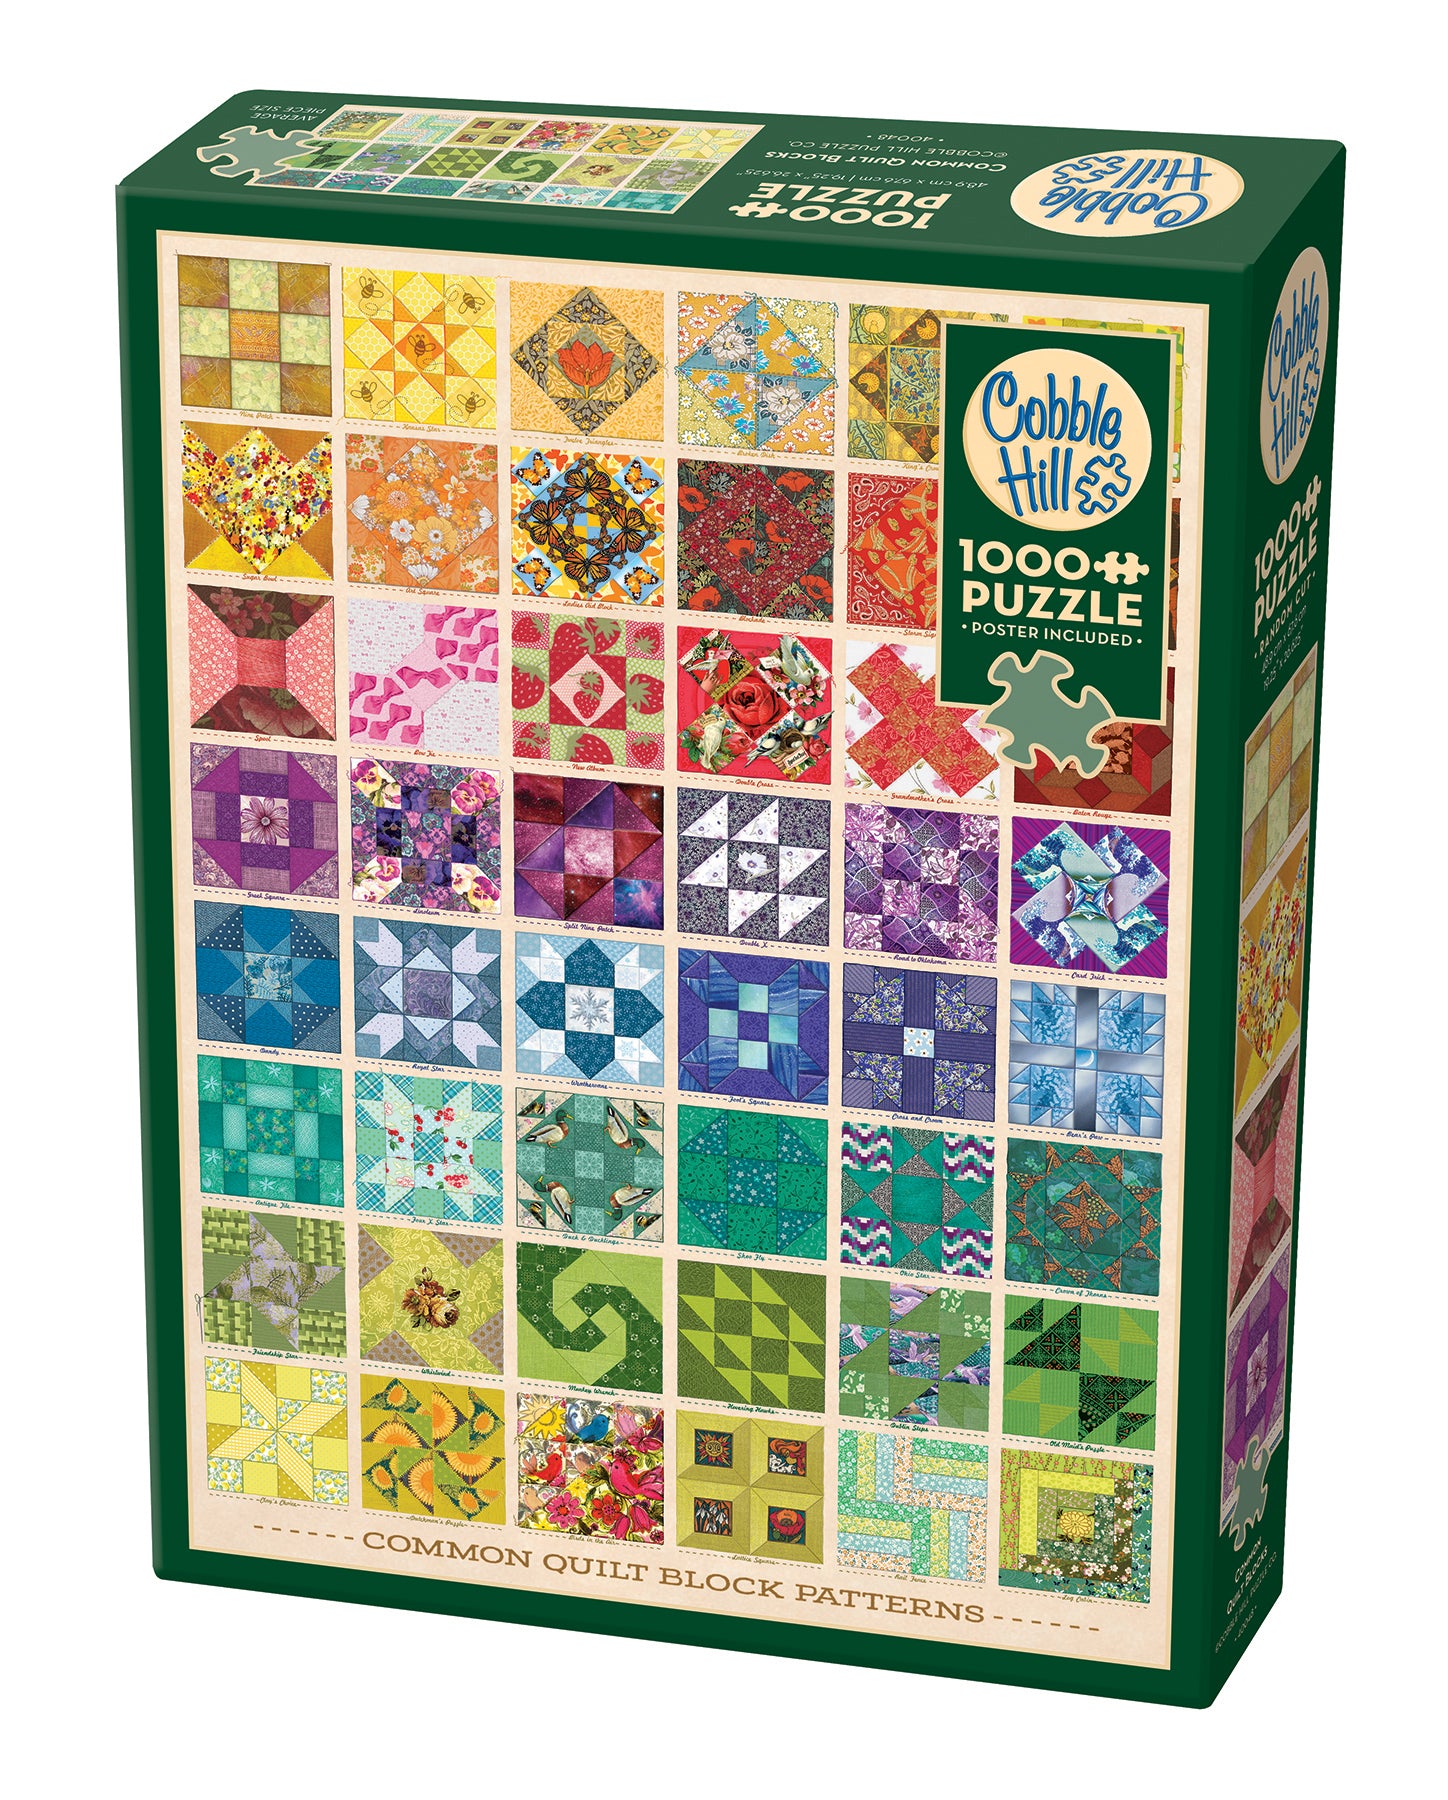 Common Quilt Blocks 1000 Piece Puzzle